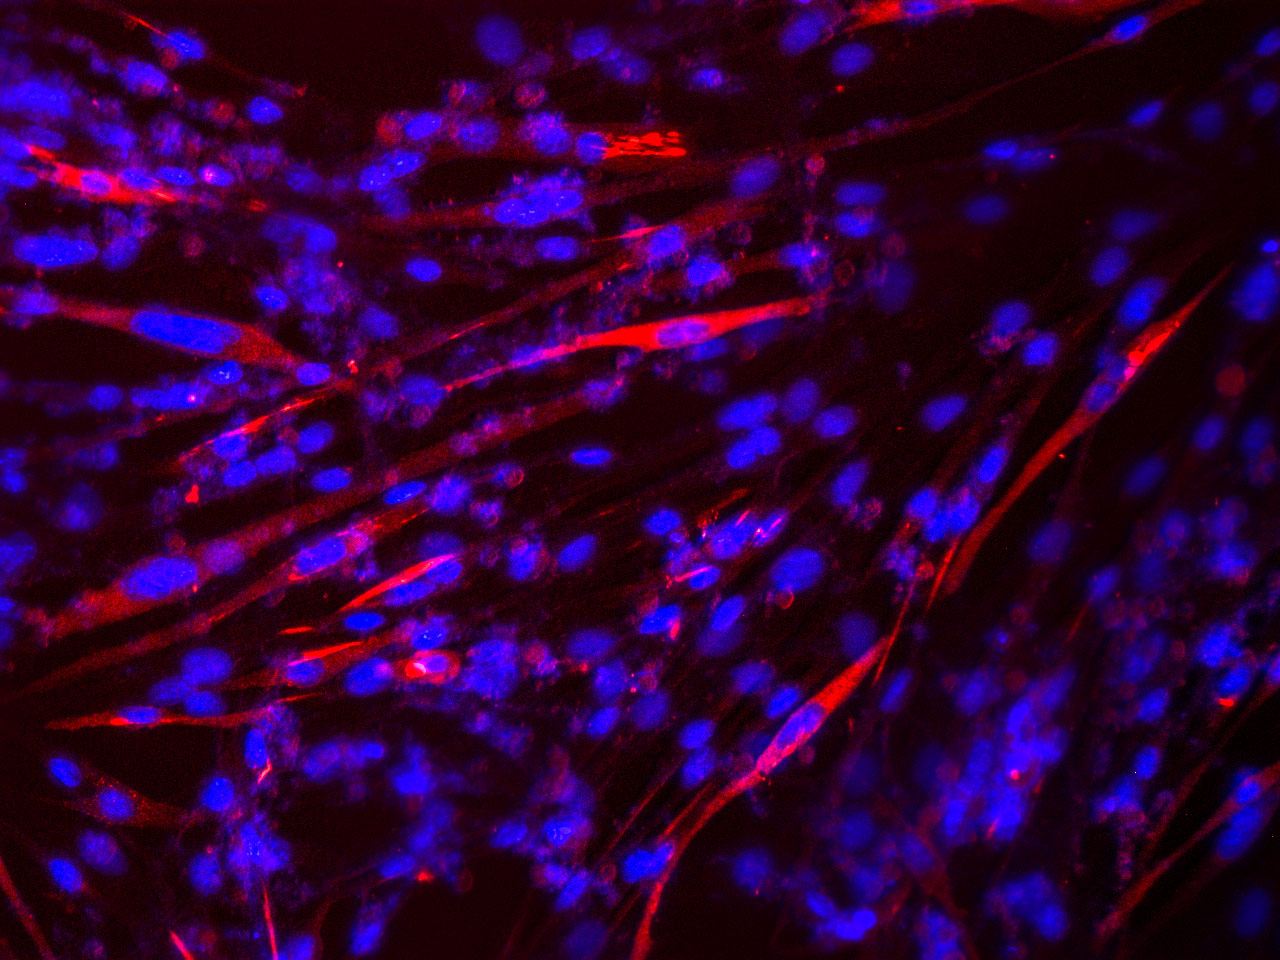 Imagen microscópica de la formación de fibras musculares in vitro a partir de células madre de músculo de ratón.